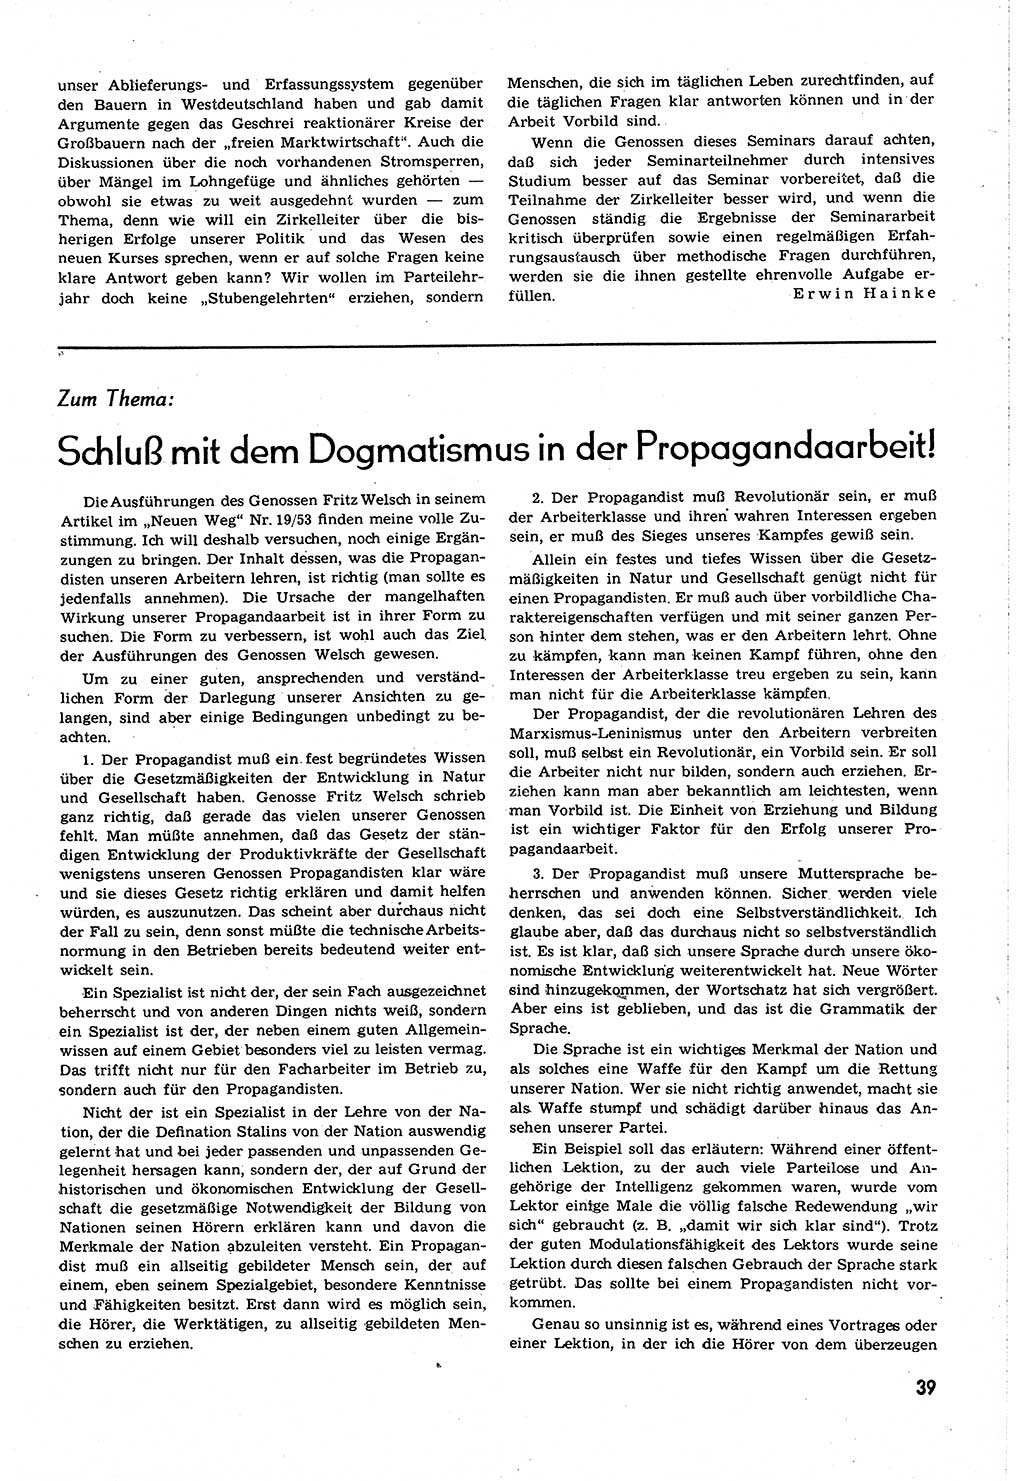 Neuer Weg (NW), Organ des Zentralkomitees (ZK) [Sozialistische Einheitspartei Deutschlands (SED)] für alle Parteiarbeiter, 8. Jahrgang [Deutsche Demokratische Republik (DDR)] 1953, Heft 21/39 (NW ZK SED DDR 1953, H. 21/39)